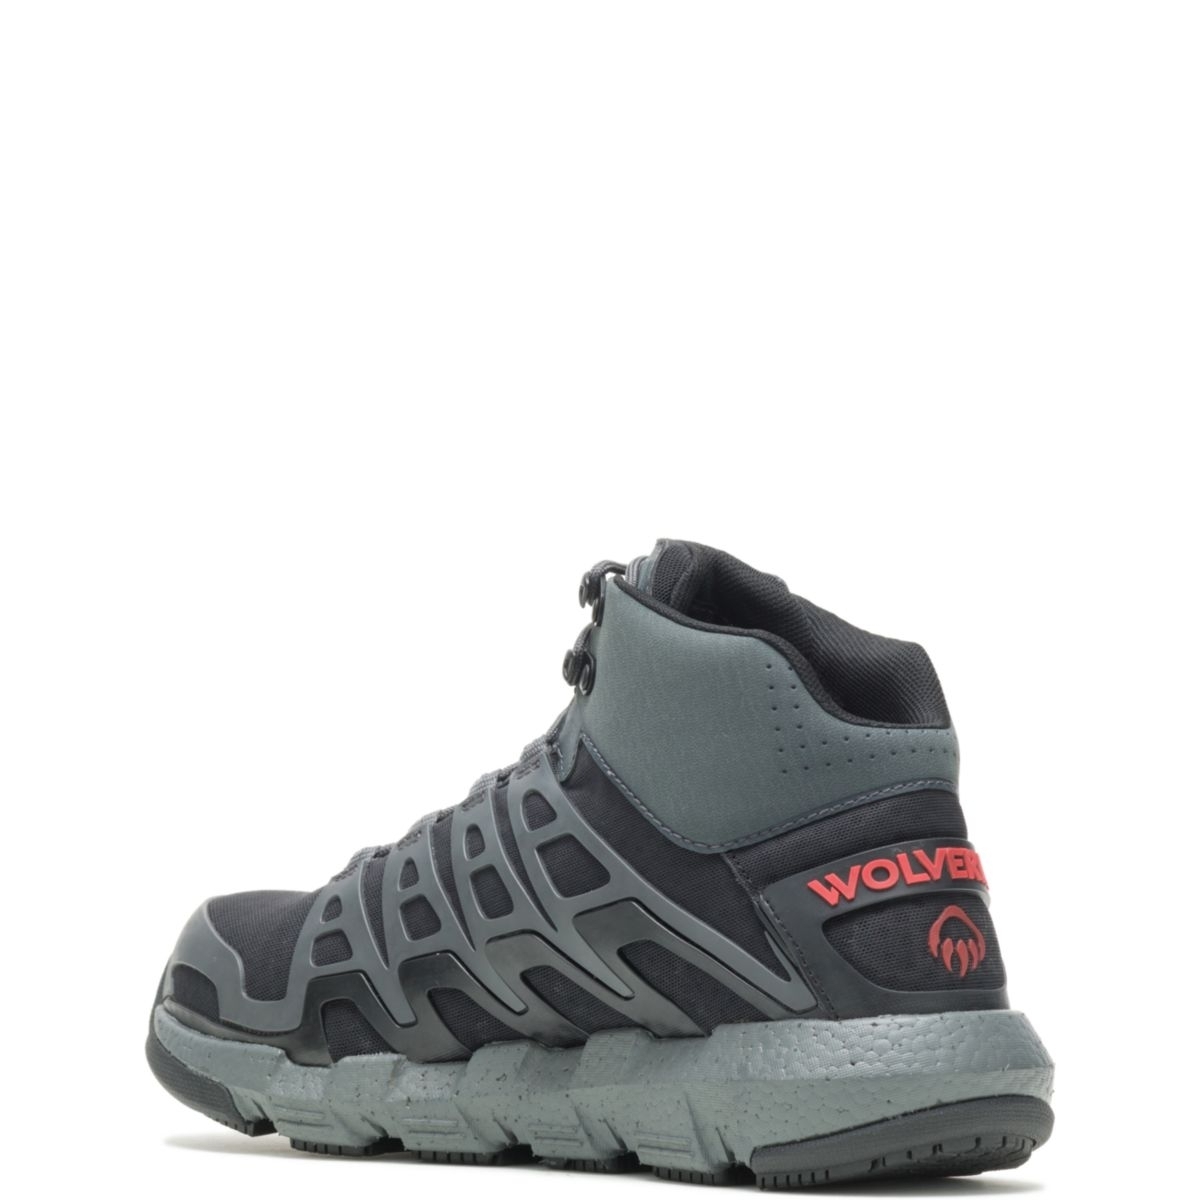 WOLVERINE Men's Rev Vent UltraSpringâ¢ DuraShocksÂ® CarbonMAXÂ® Composite Toe Work Boot Charcoal/Red - W211018 Charcoal/Red - Charcoal/Red, 7.5